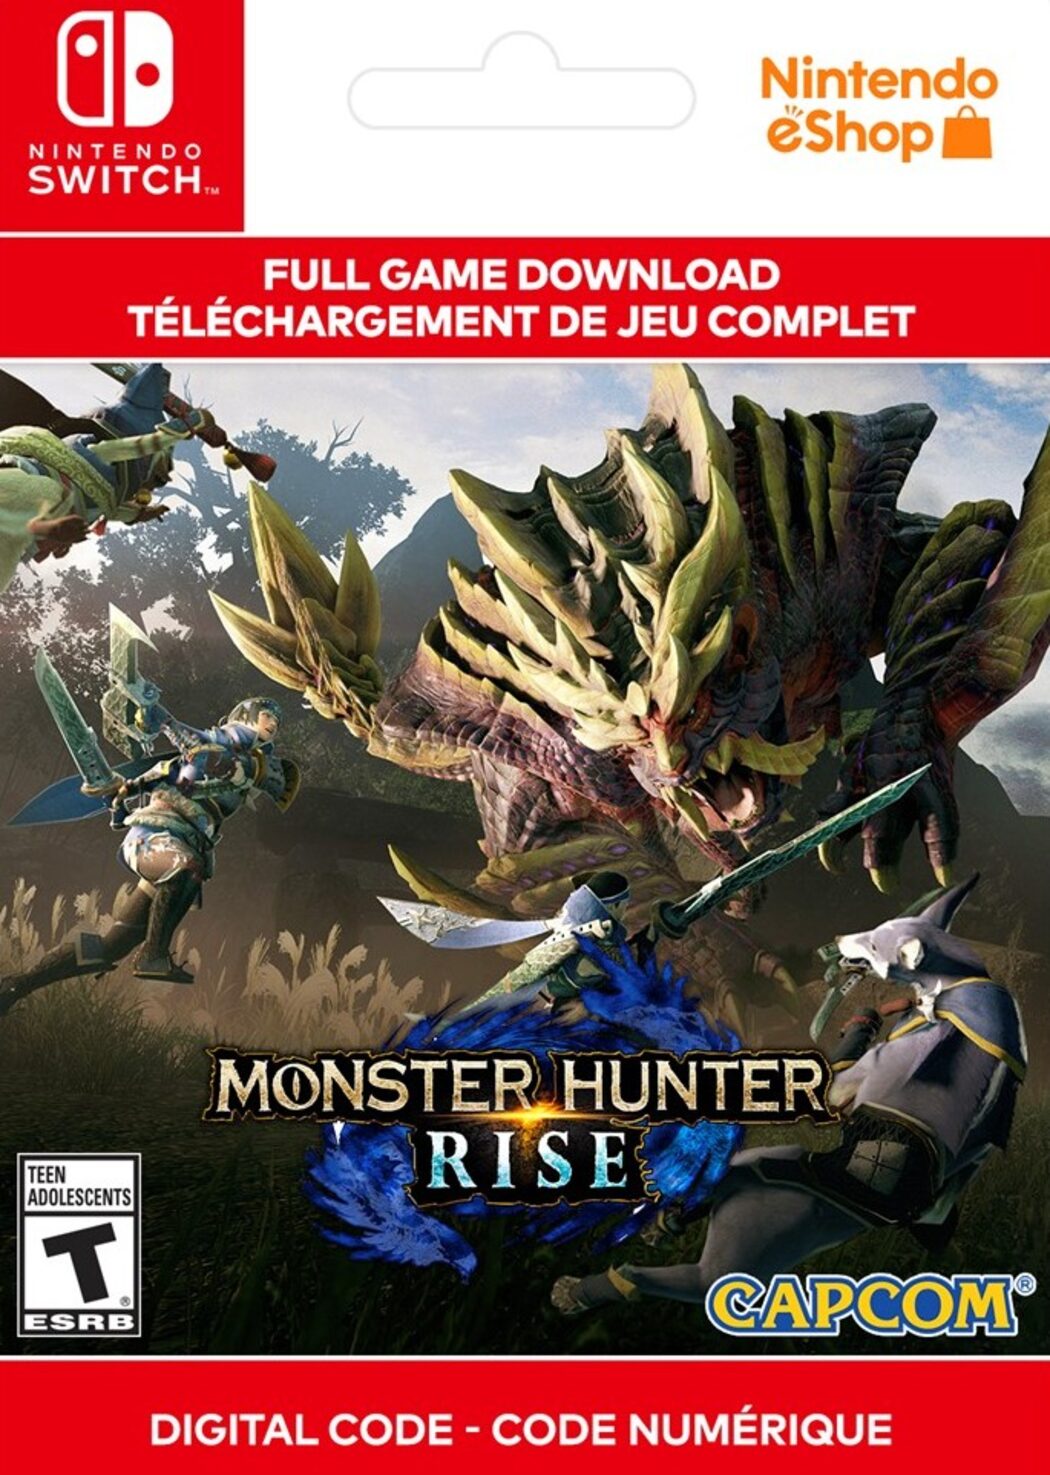 Monster Nintendo Cheap ENEBA Rise price Hunter | key! Buy